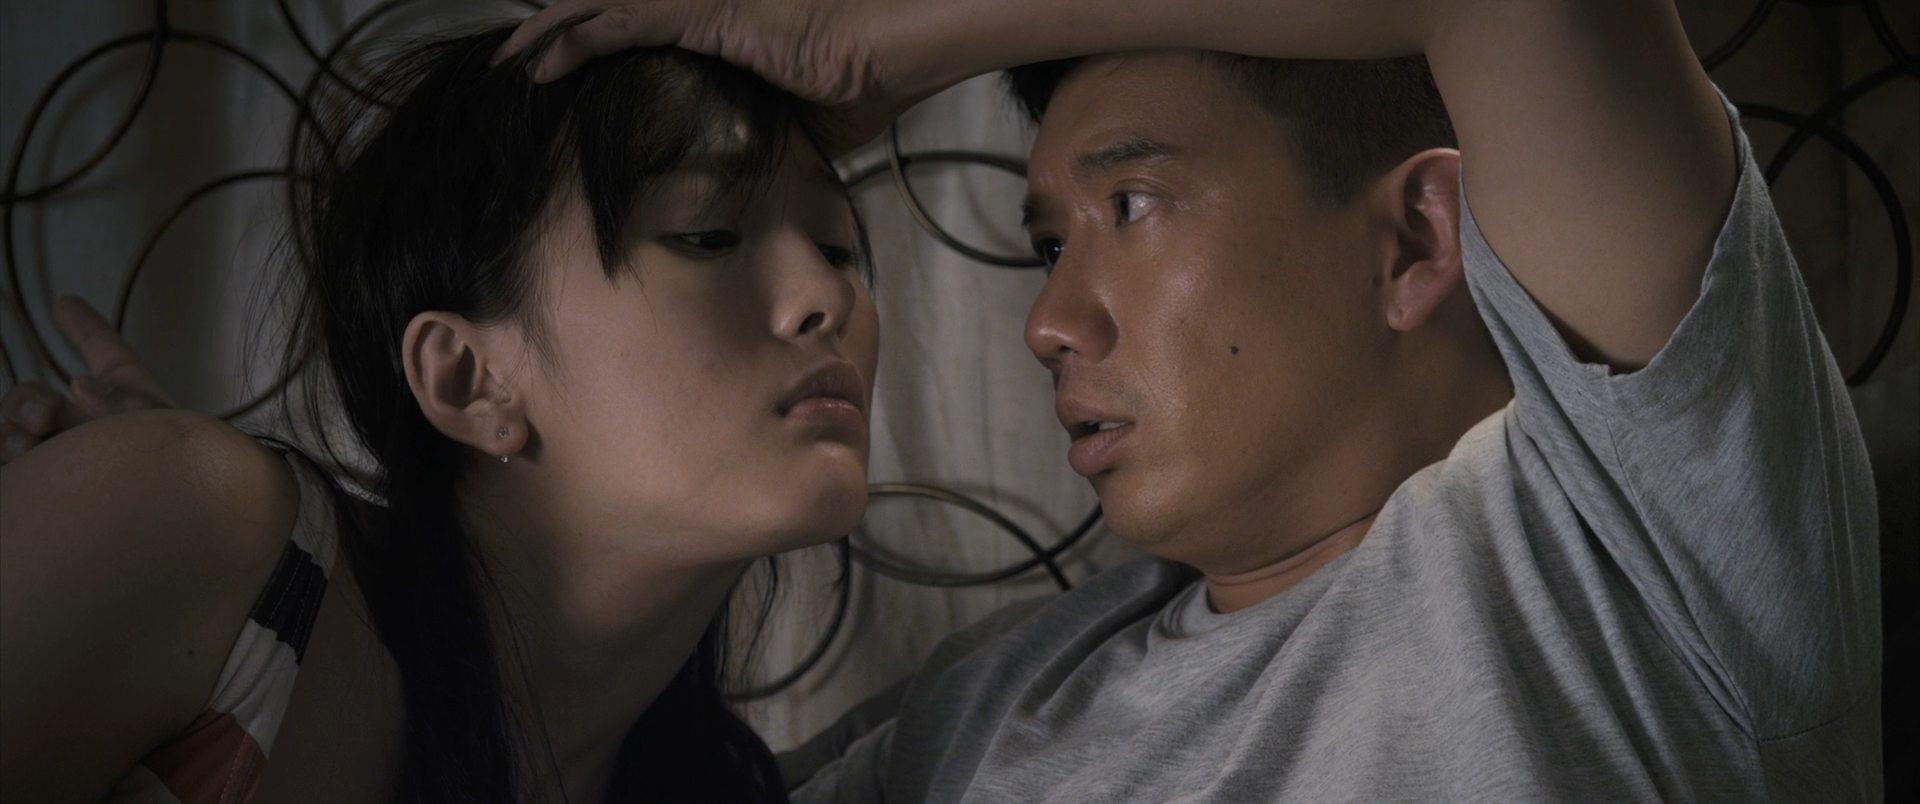 Кадр из фильма Вульгарная комедия / Dai juk hei kek (2012)